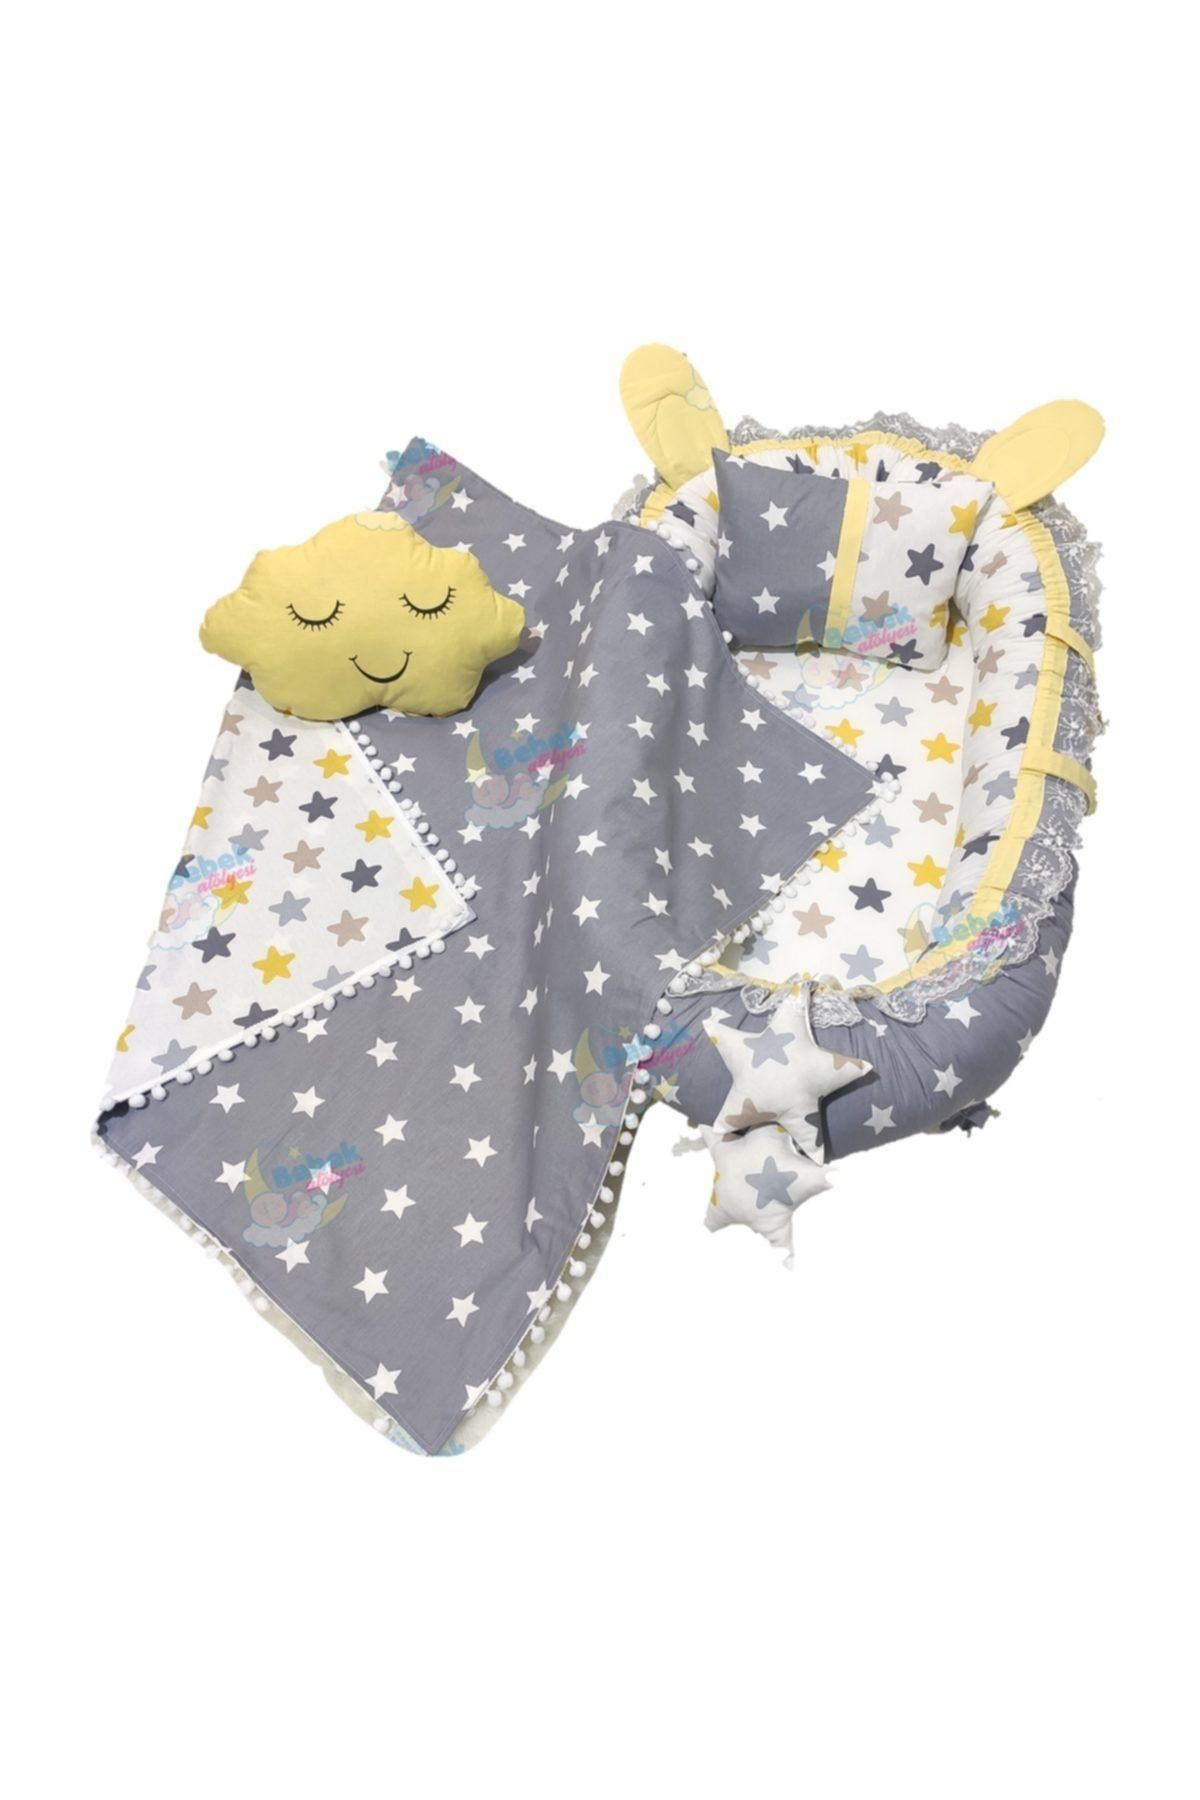 Bebek Atölyesi Gri Sarı Yıldız Desenli Kulaklı Ponpon Battaniye Ve Bulut Yastık Seti